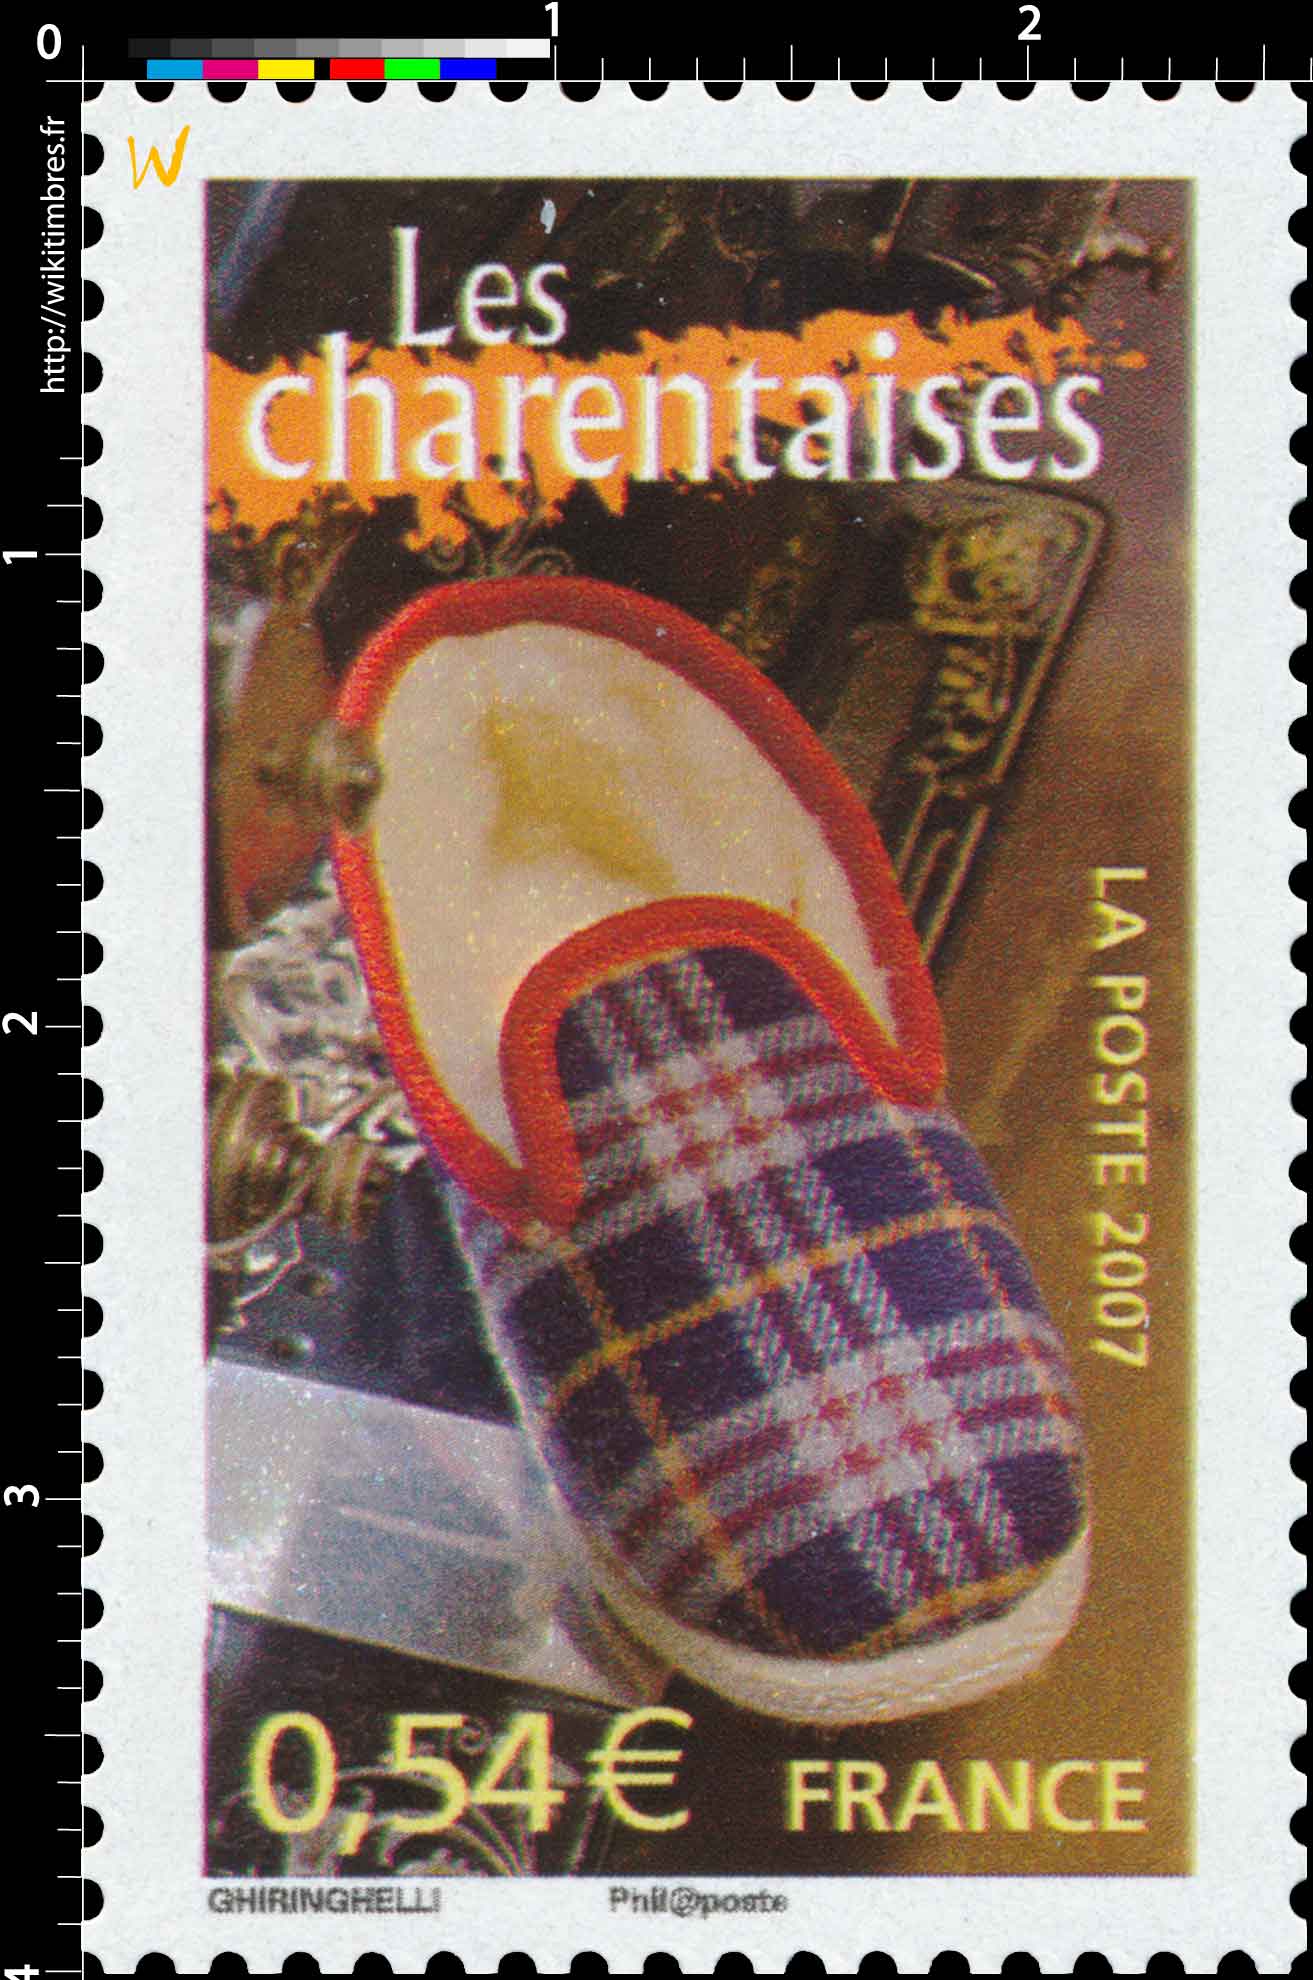 2007 Les charentaises